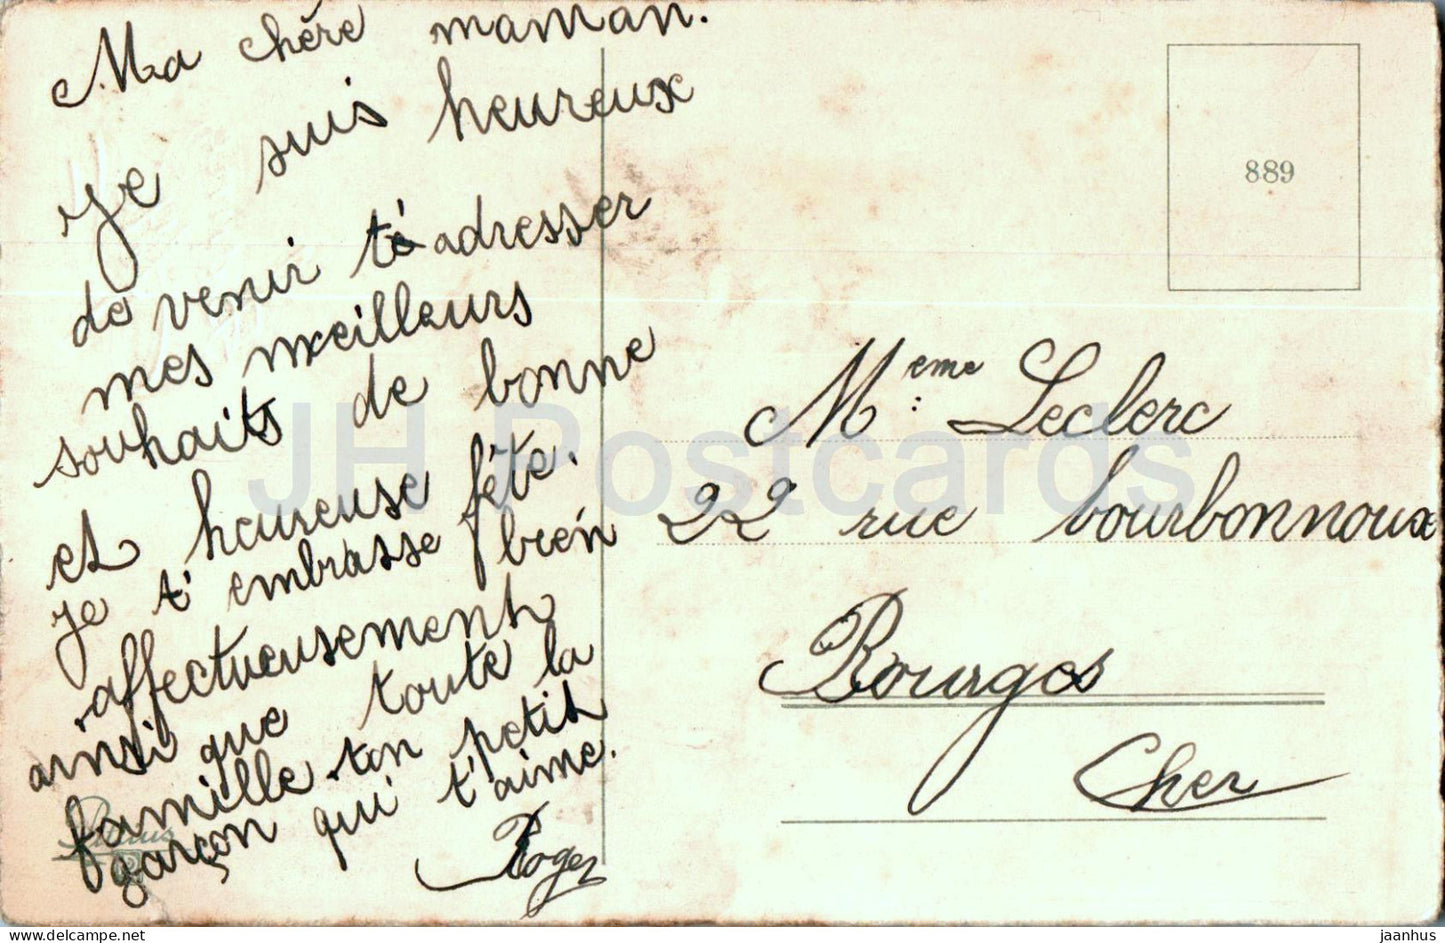 Carte de voeux - Bonne Fête - fleurs - marguerite - 889 - carte postale ancienne - France - occasion 